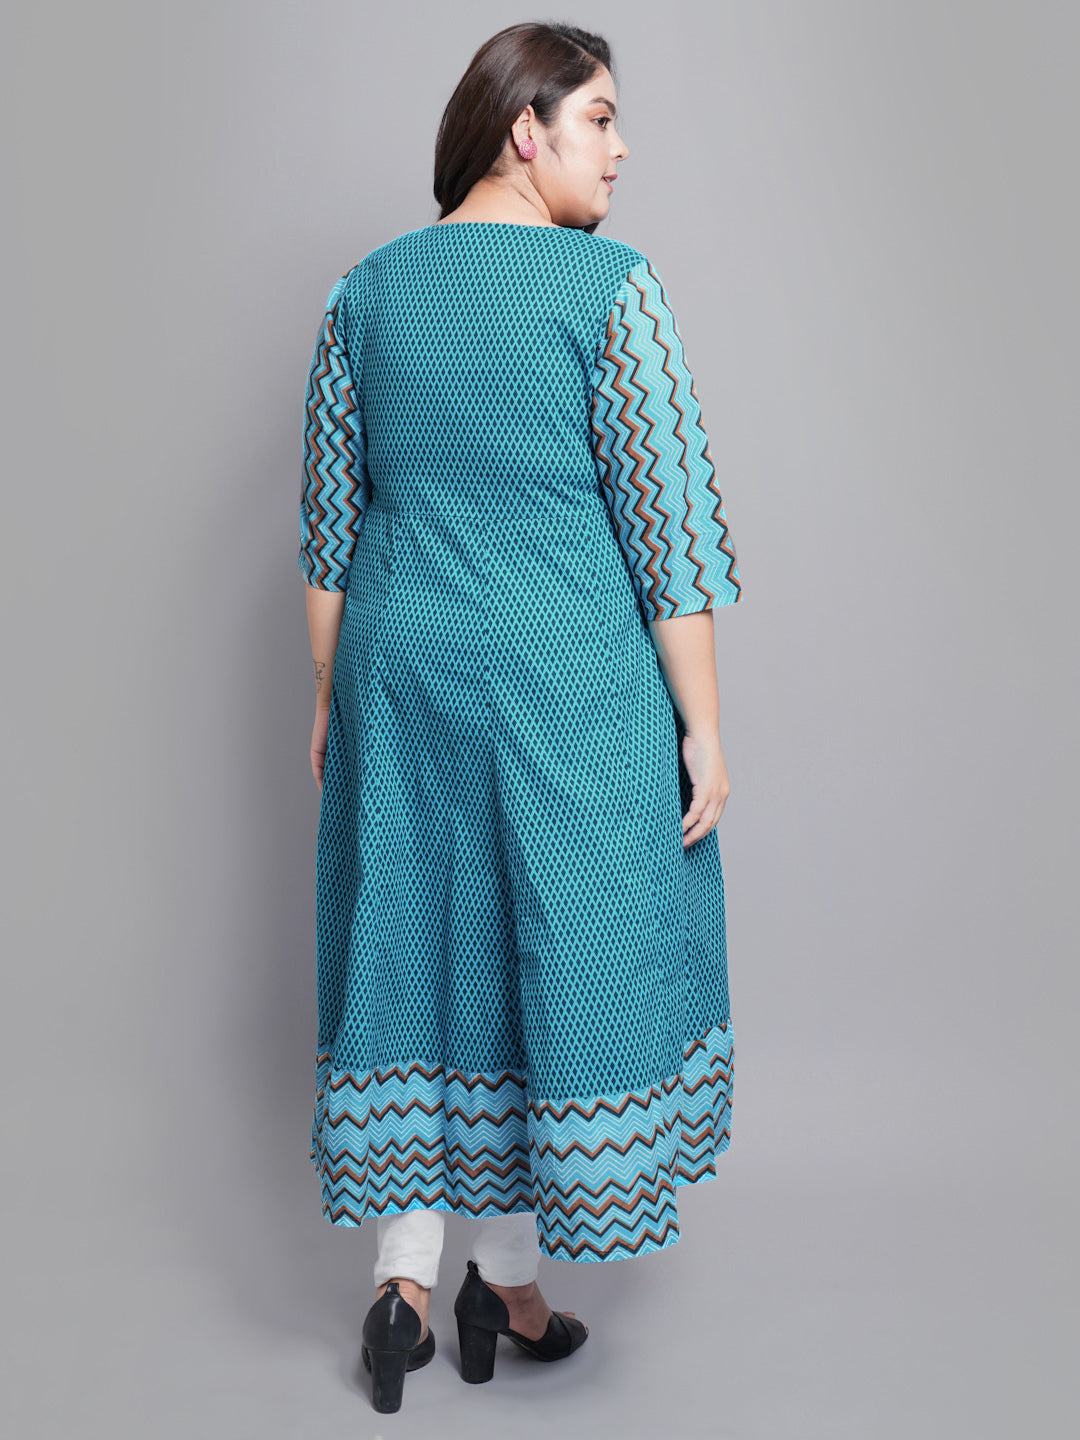 YASH GALLERY Women's Plus Size Cotton Geometric Print Anarkali kurti (Teal)